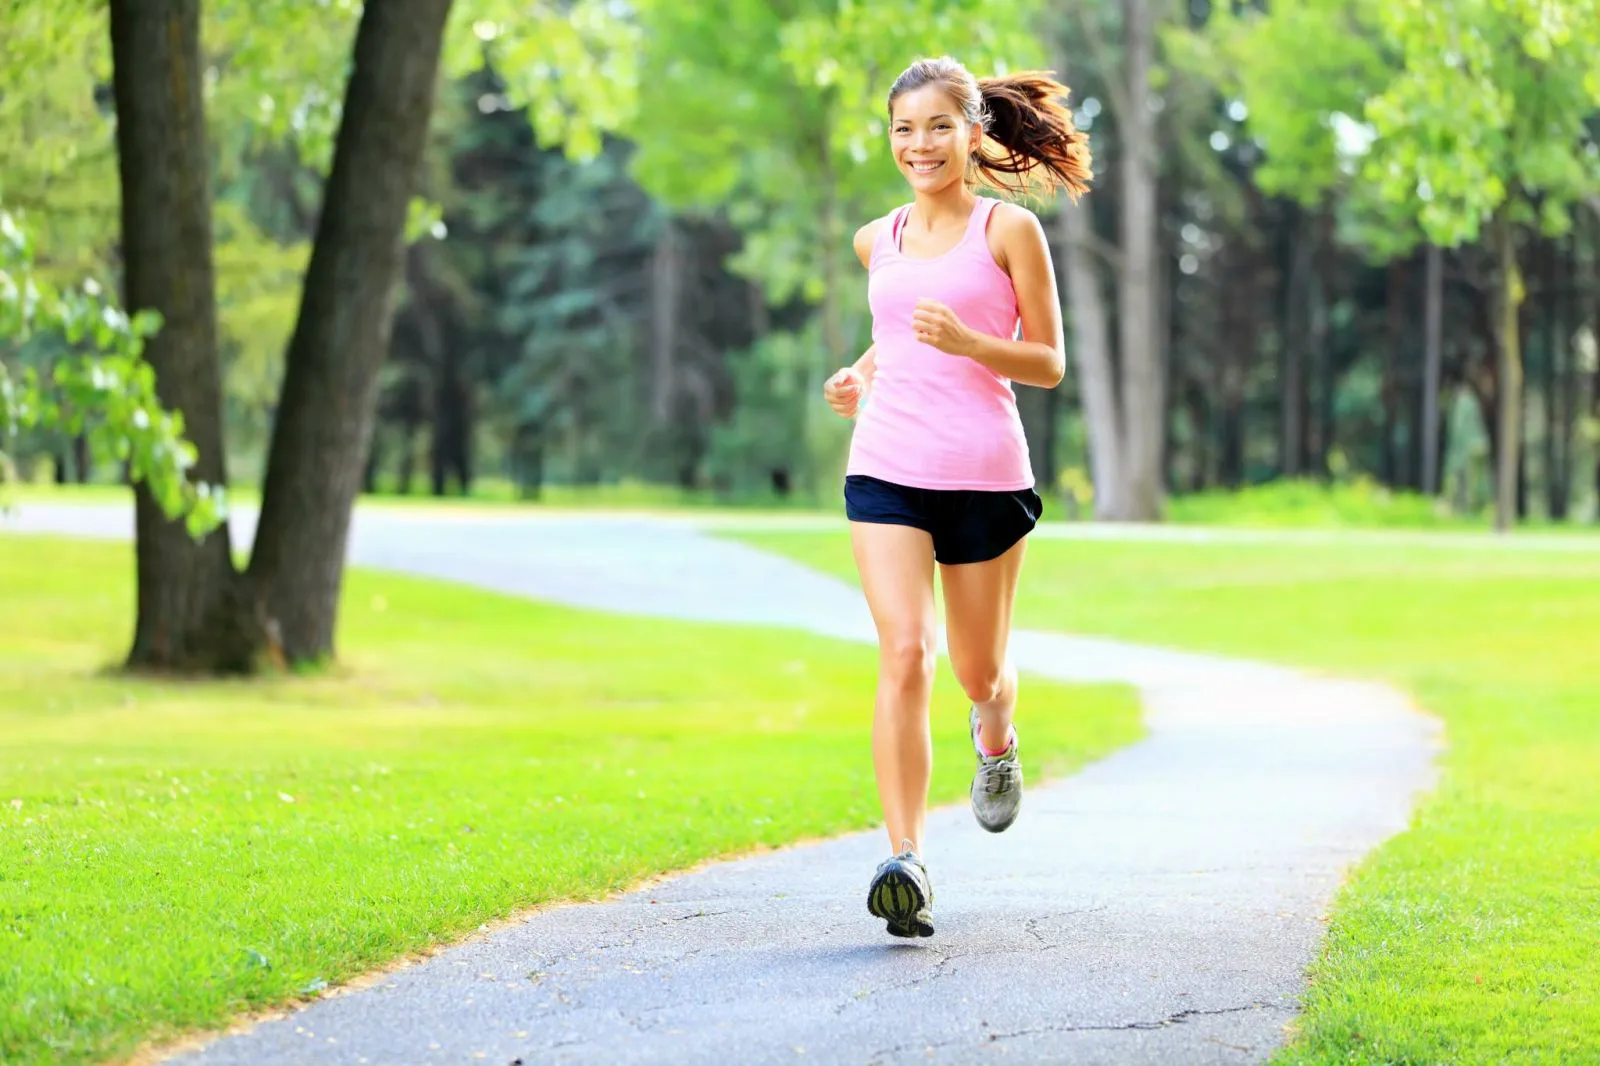 Tập thể dục cũng giúp người bệnh có một cơ thể khỏe mạnh, tràn đầy năng lượng